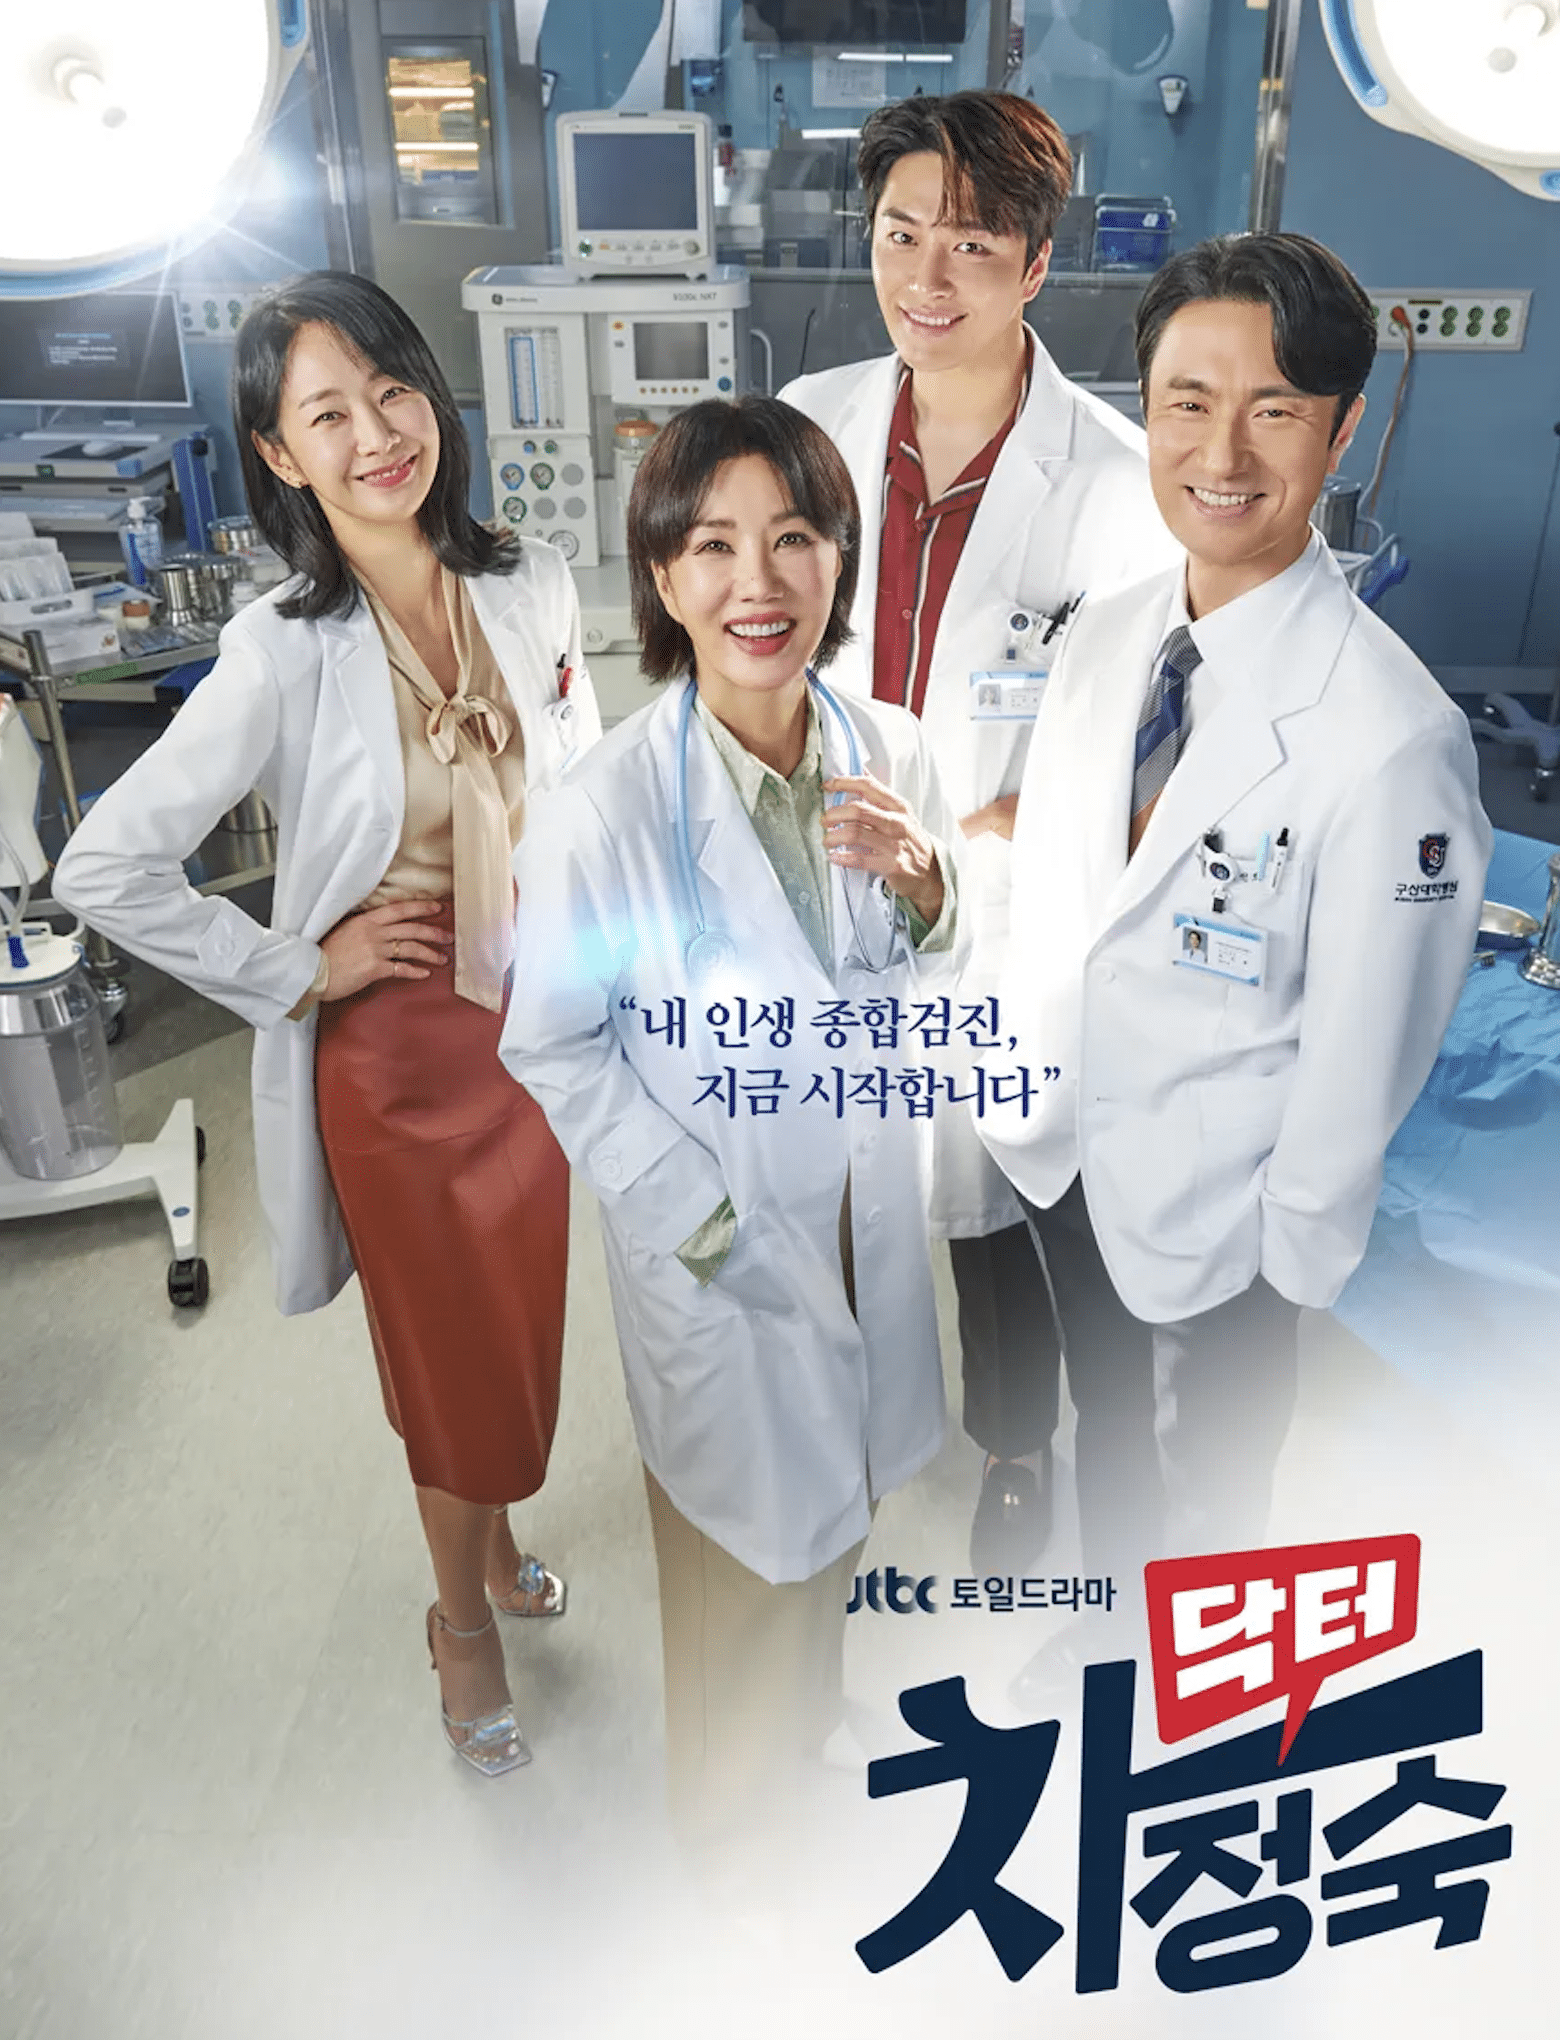 『浪漫ドクターキム・サブ3』の競合ライバルとして一歩リード中のJTBCドラマ『医師チャ・ジョンスク』